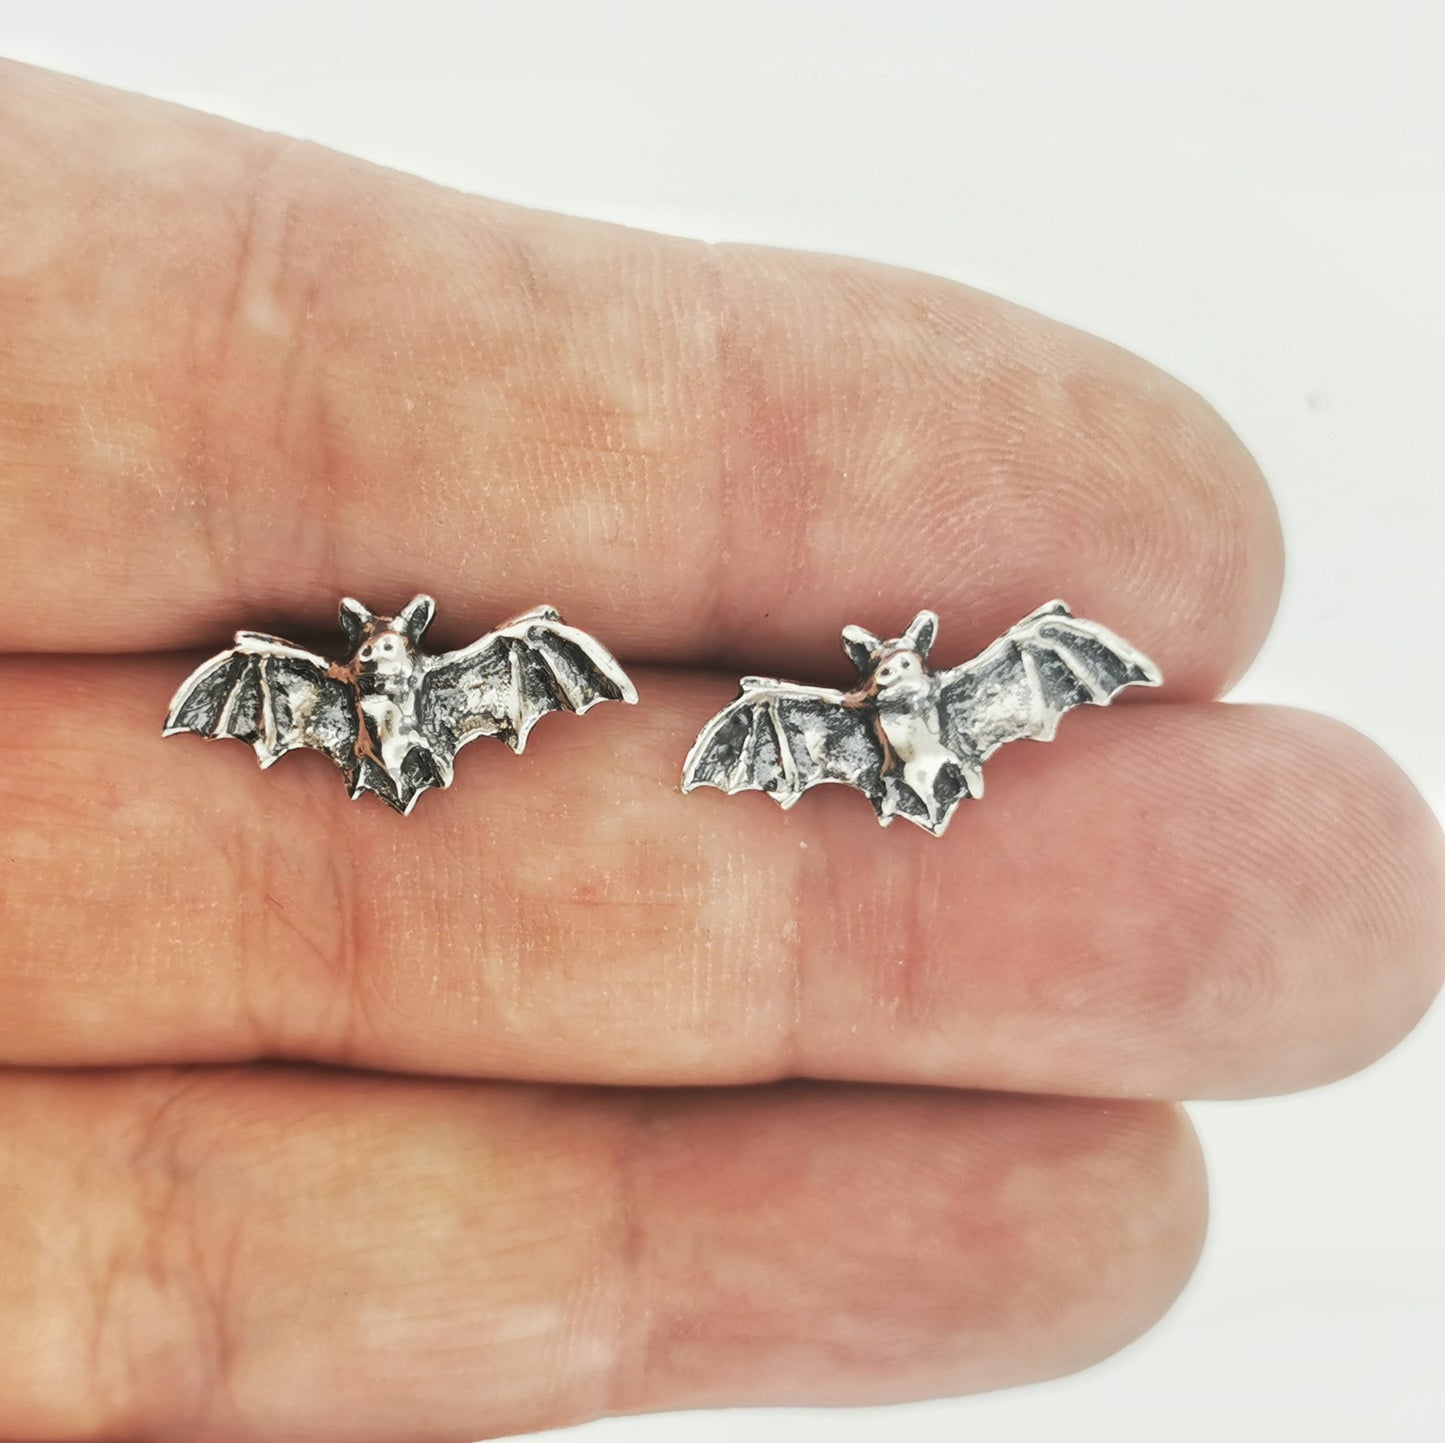 Bat Stud Earrings in Sterling Silver, 925 Silver Bat Jewellery, 925 Silver Bat Studs, Silver Bat Jewellery, Bat Lover Earrings In Silver, Flying Mouse Studs, 925 Silver Bat Earrings, Silver Bat Earrings, Goth Silver Earrings, Silver Spooky Earrings